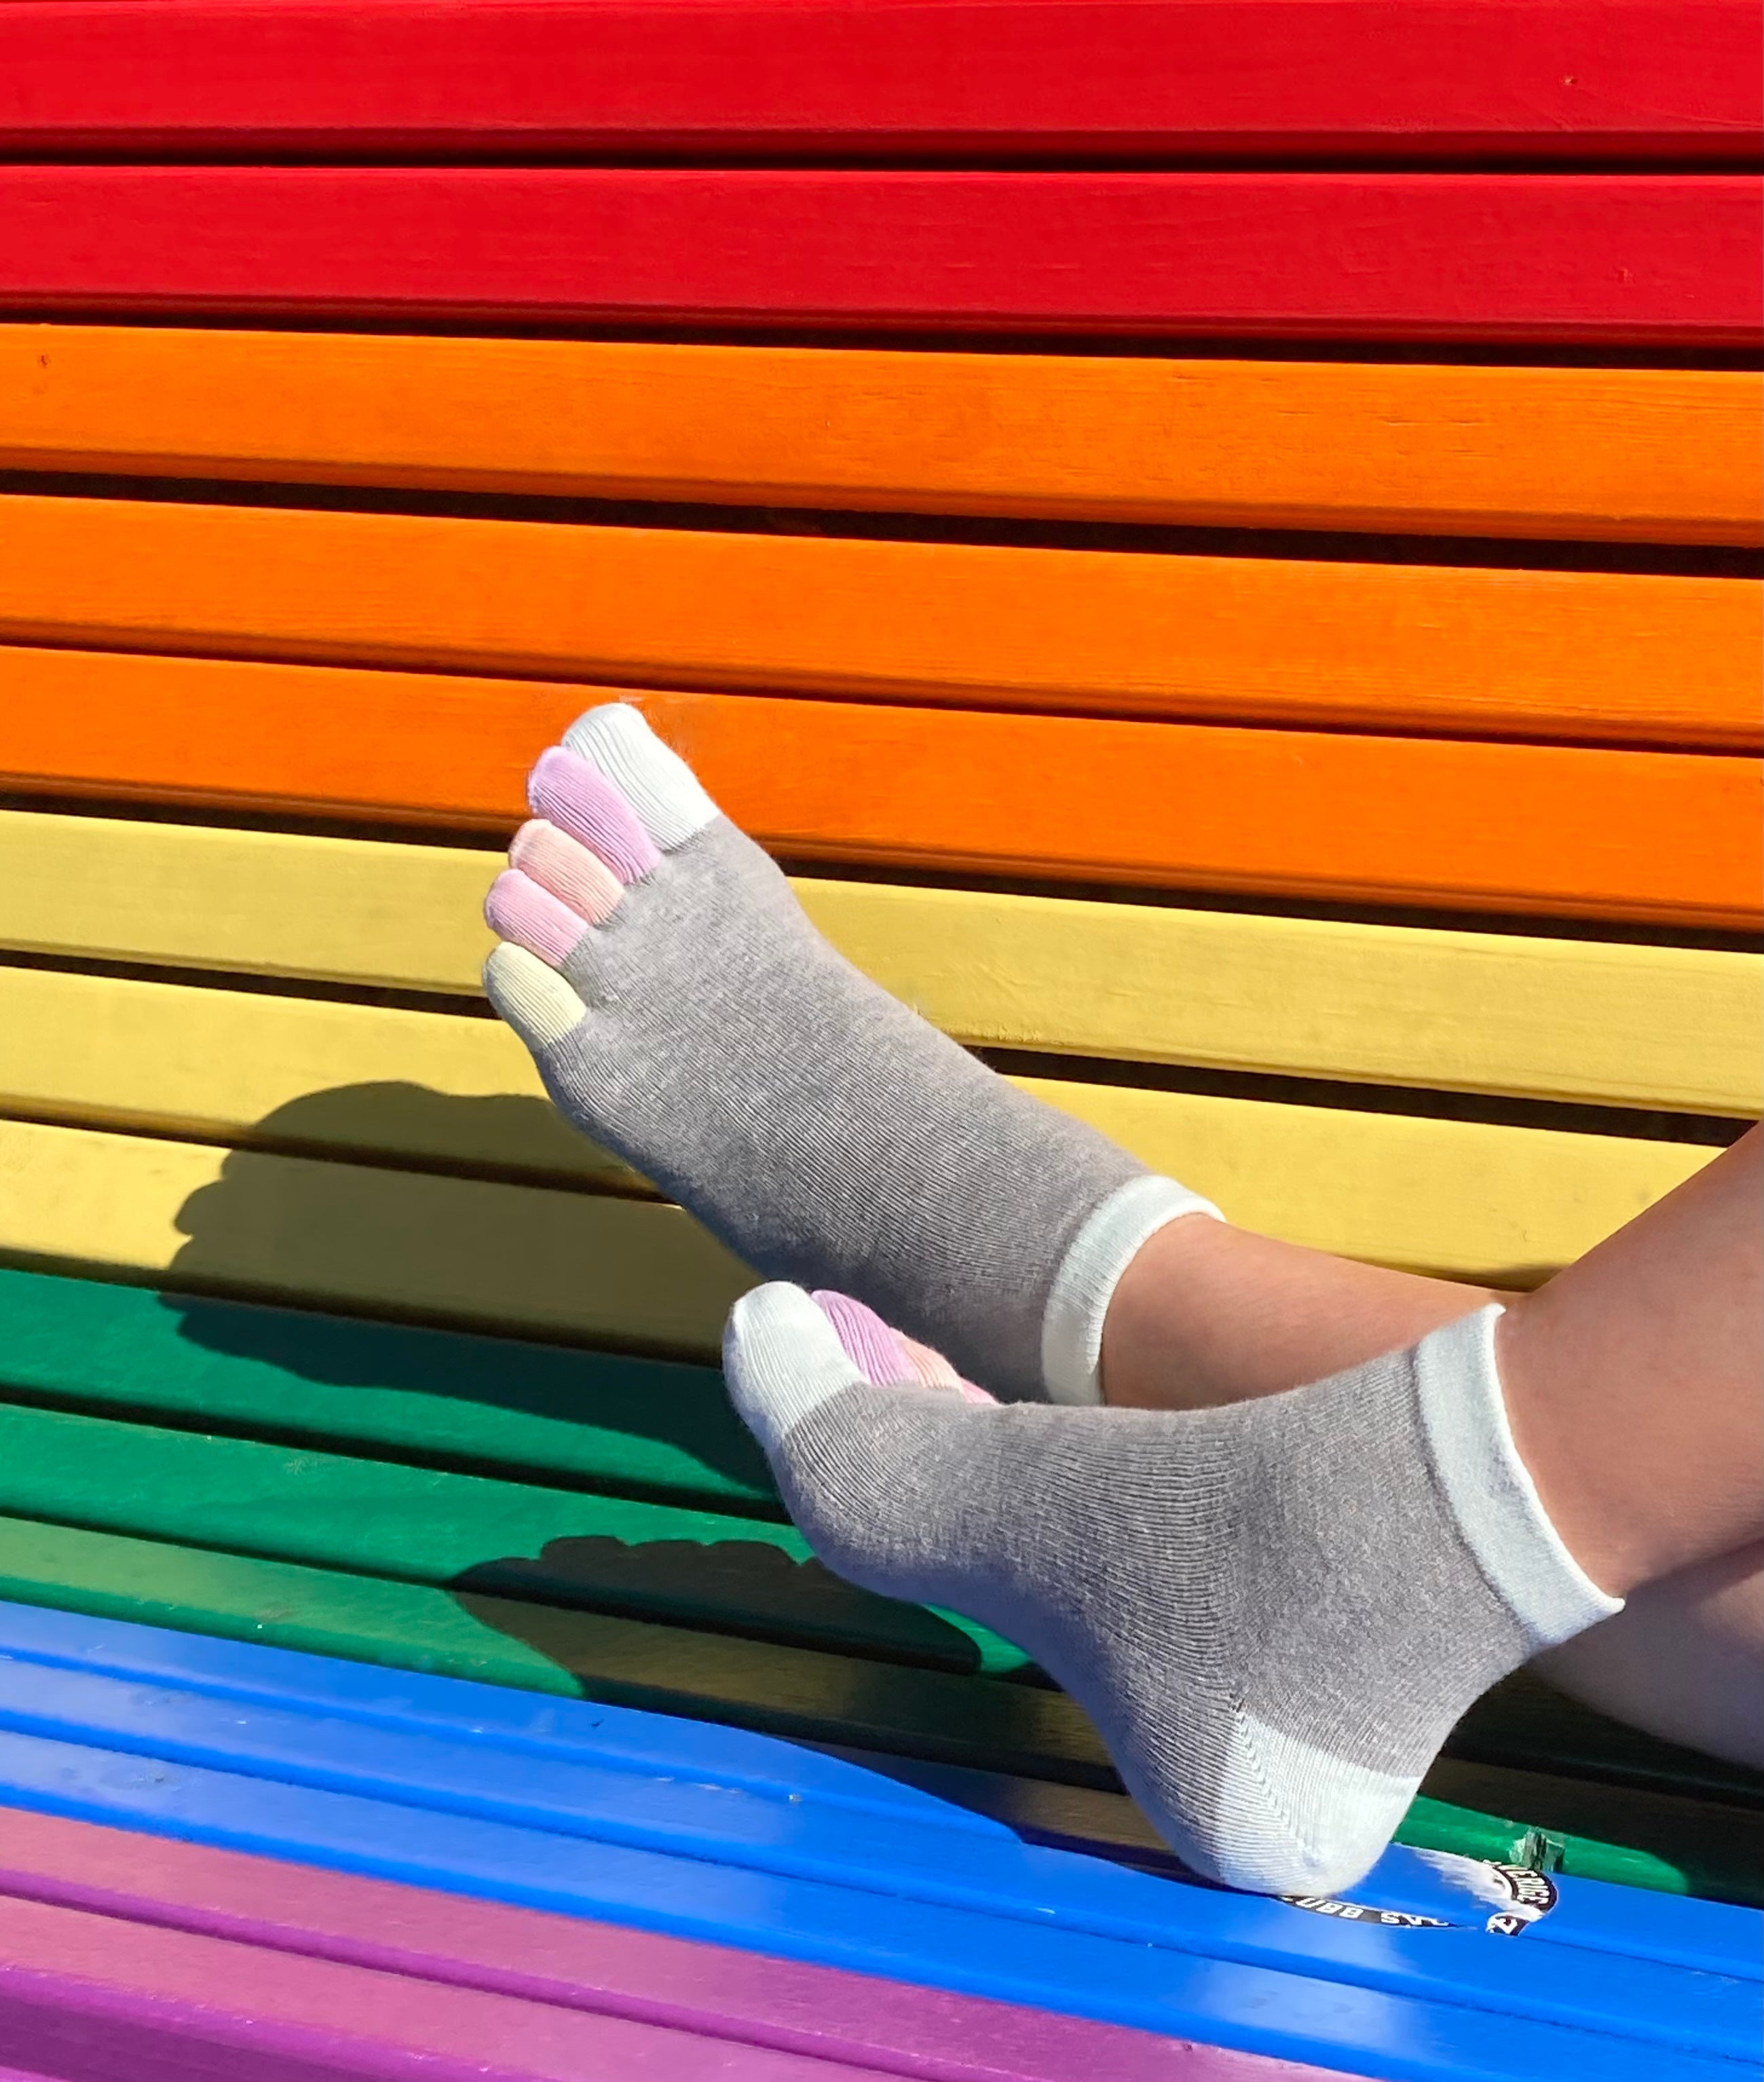 Rainbows, chaussettes courtes avec orteils colorés - Knitido